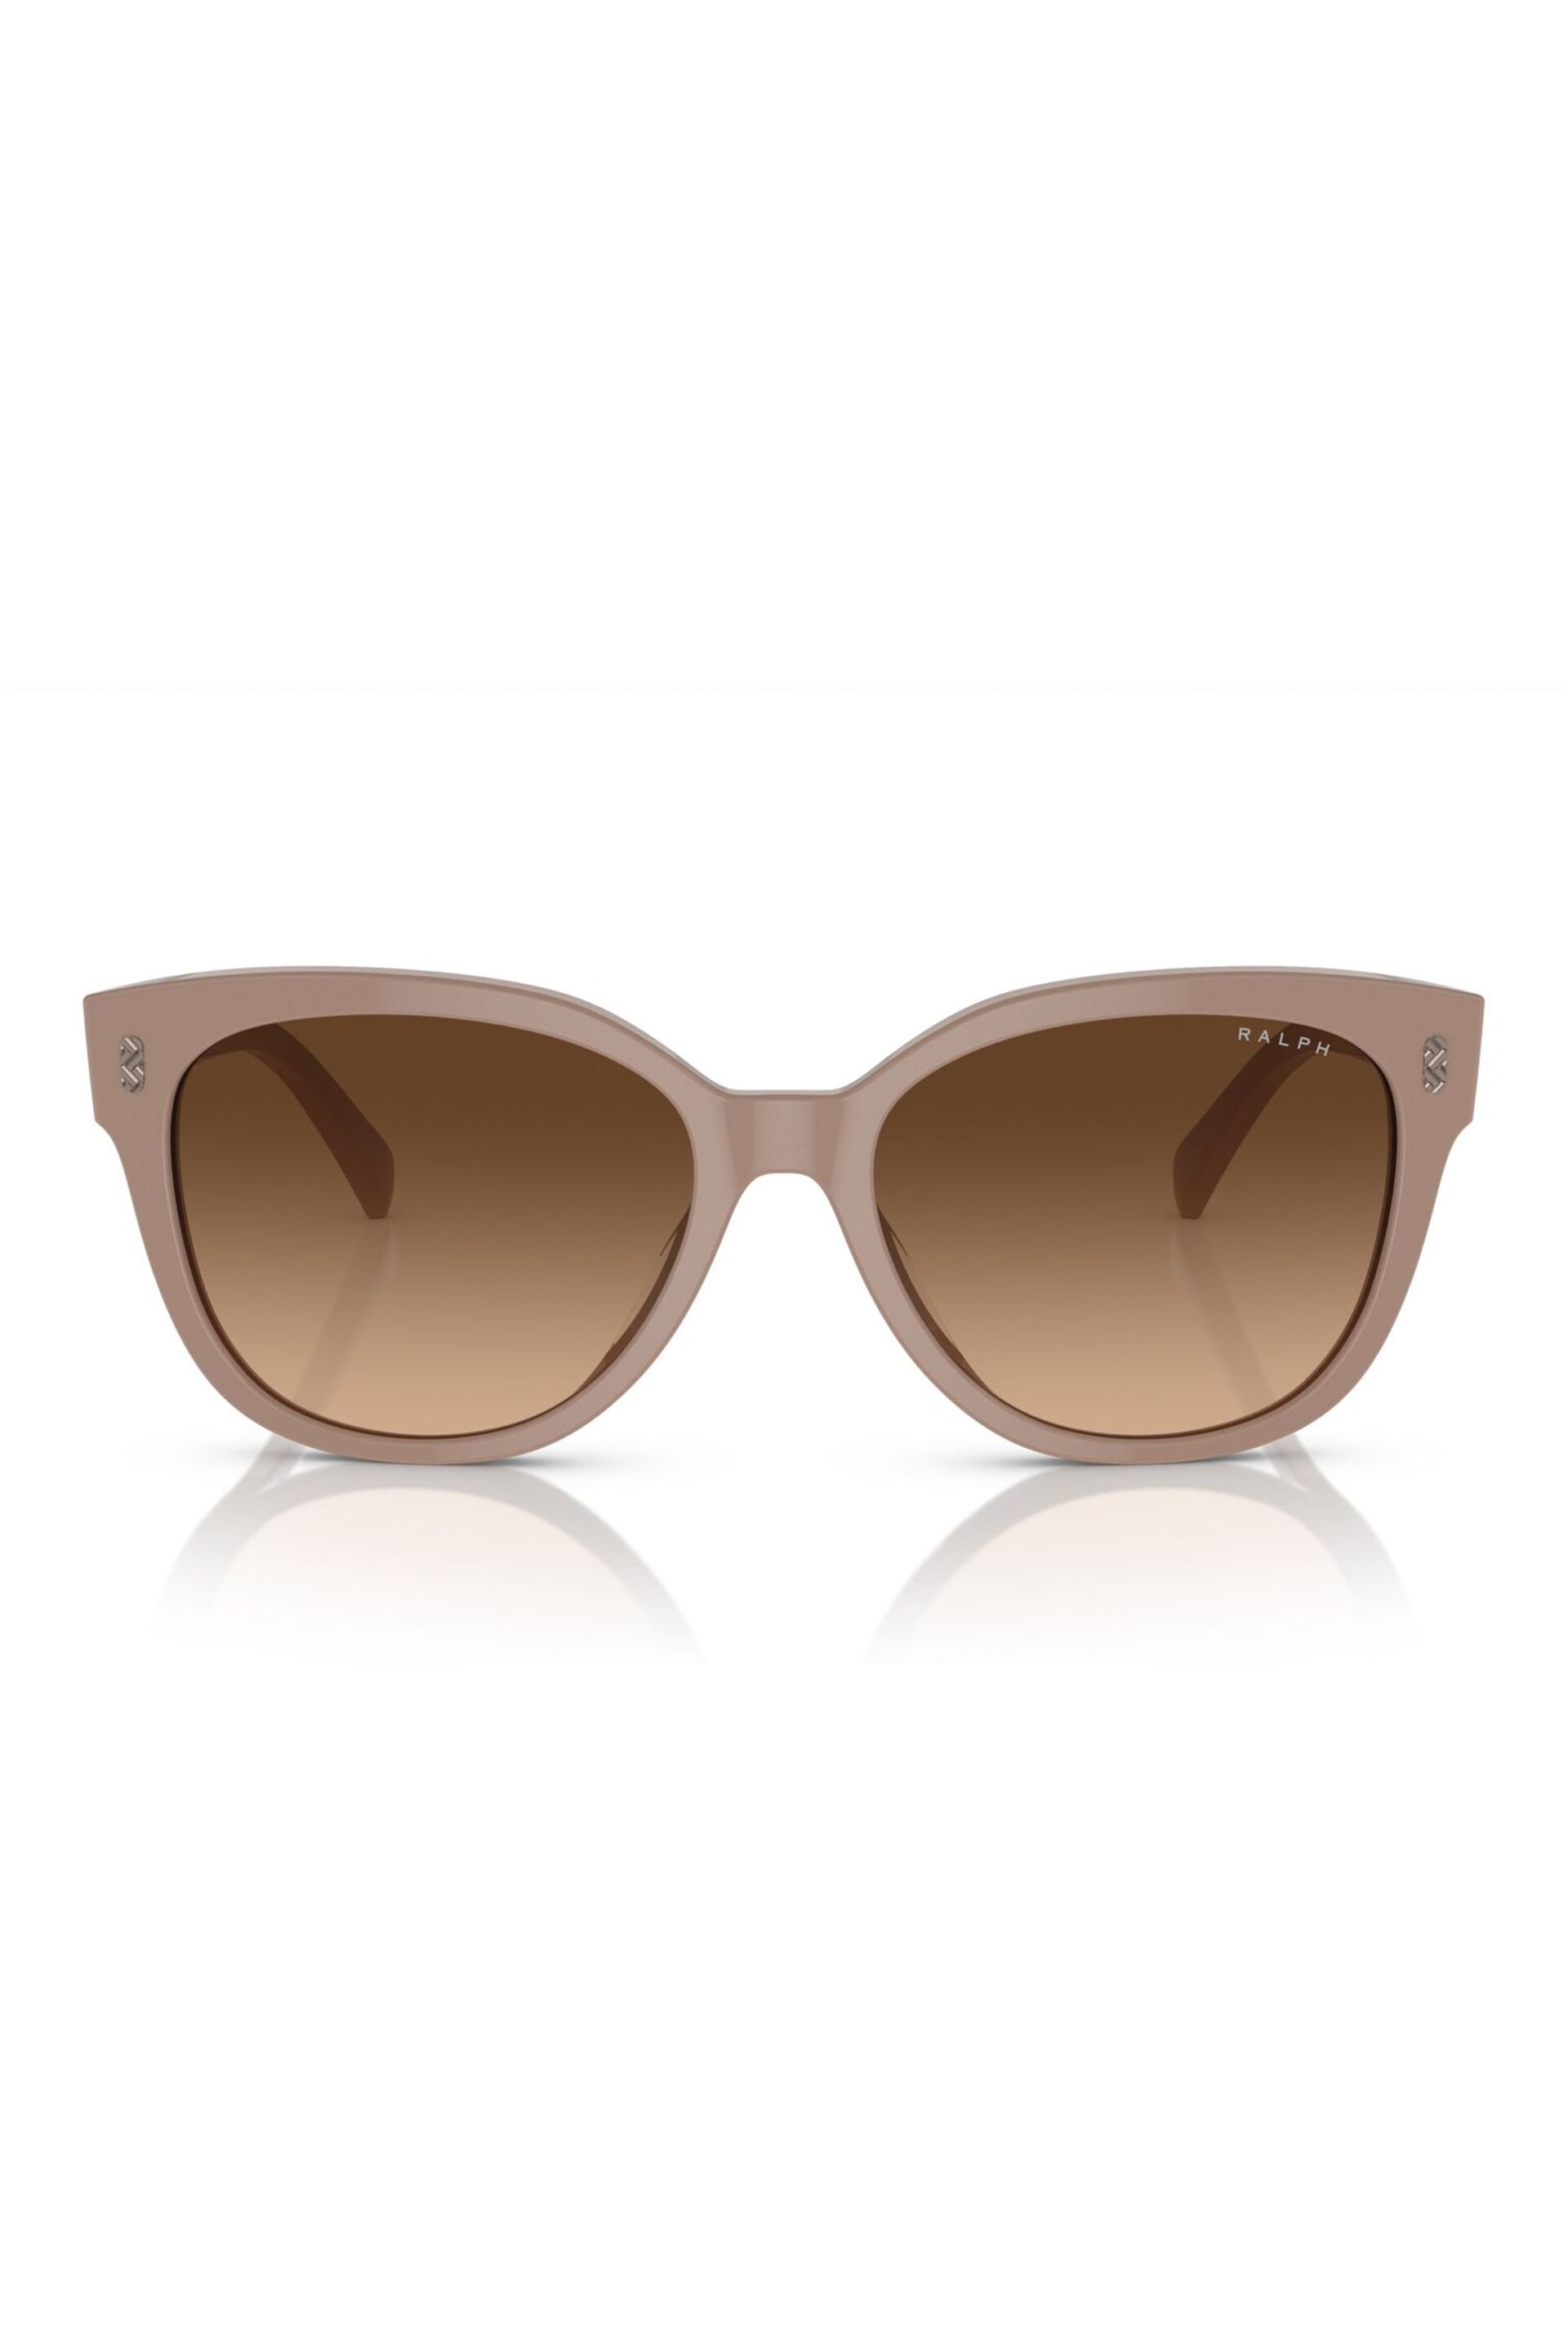 Emporio Armani EA2033 Brown Sunglasses - Image 1 of 5